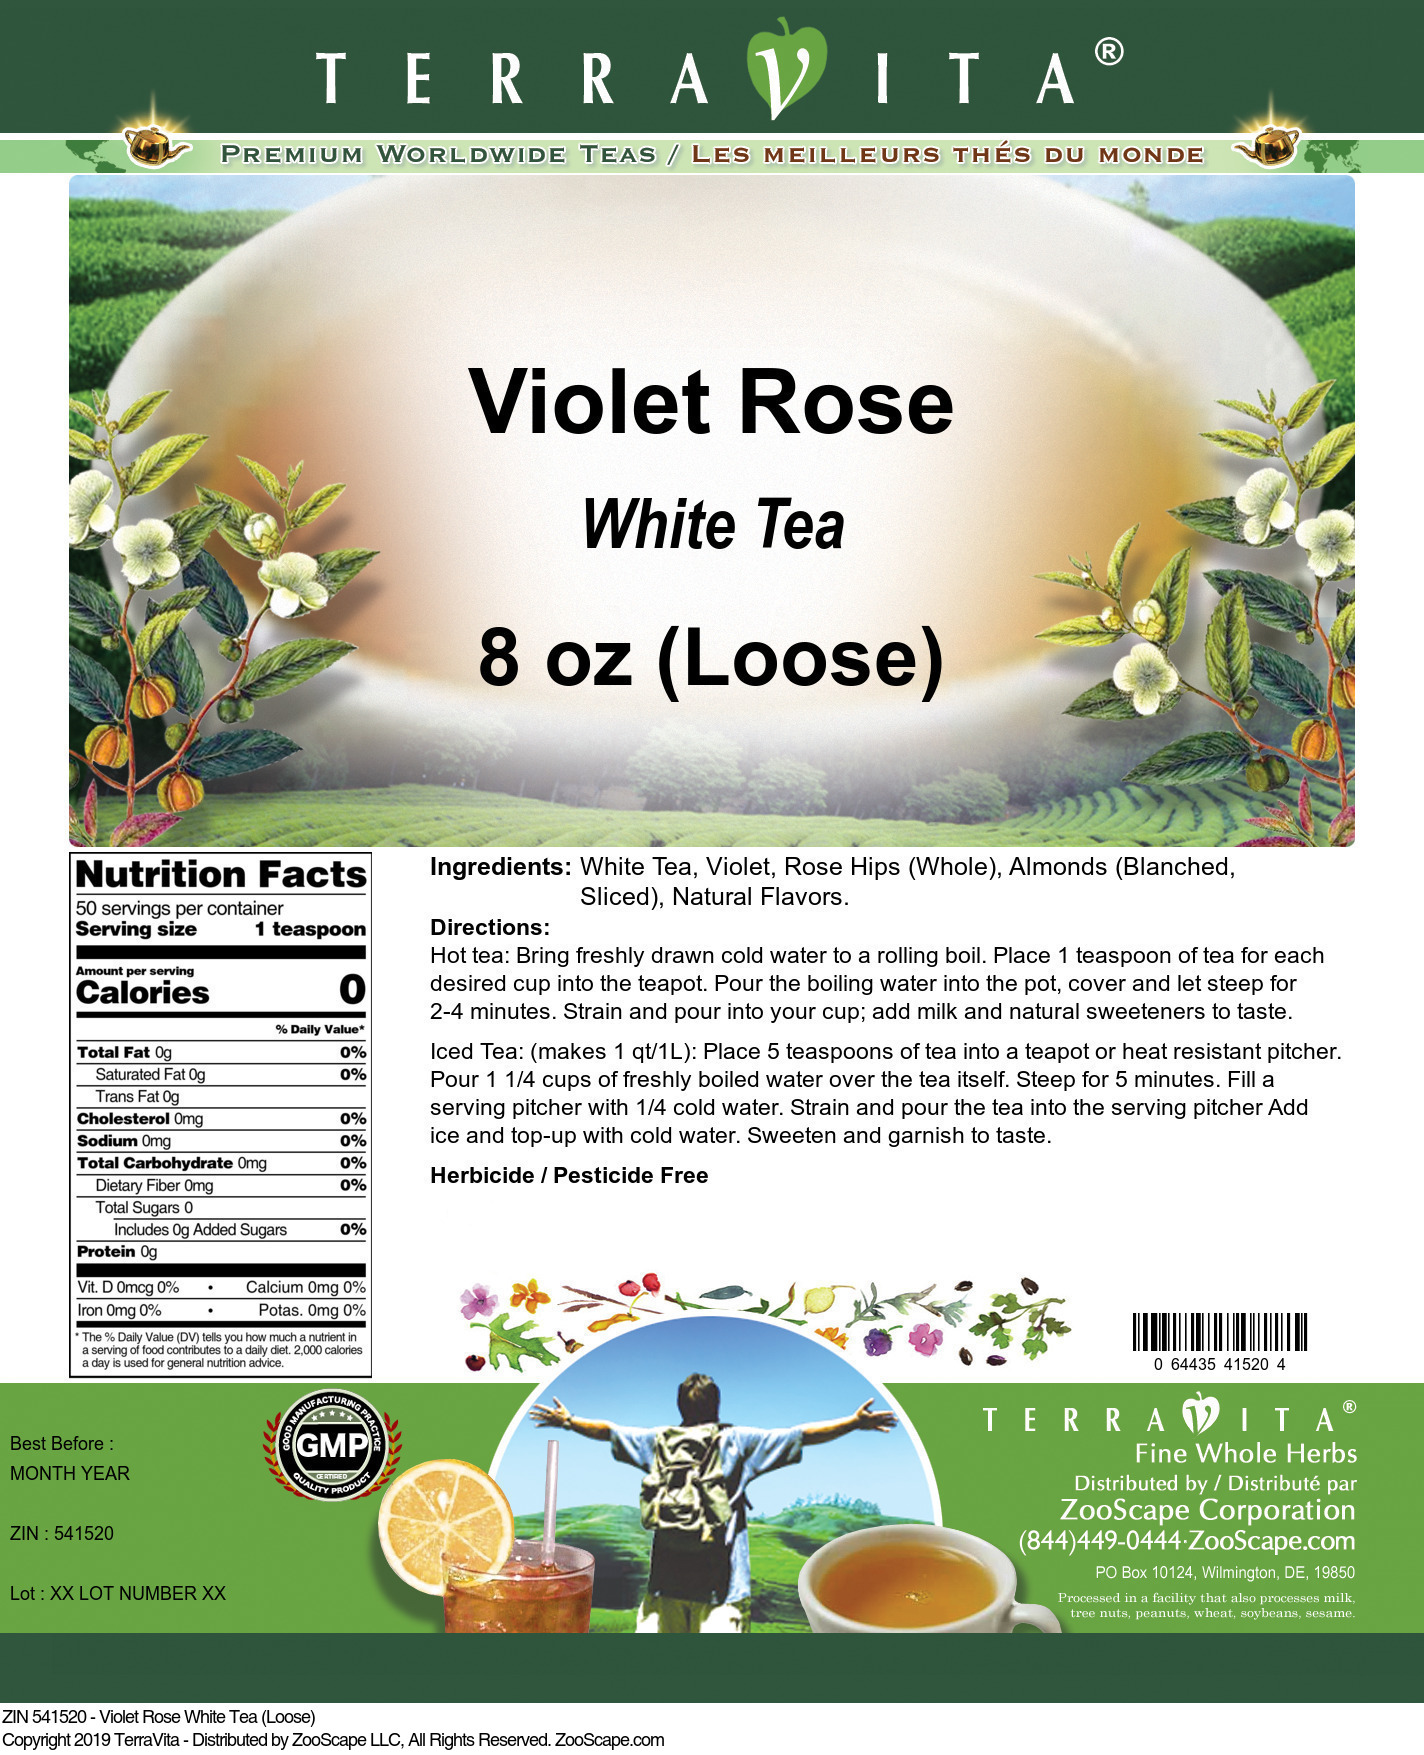 Violet Rose White Tea (Loose) - Label